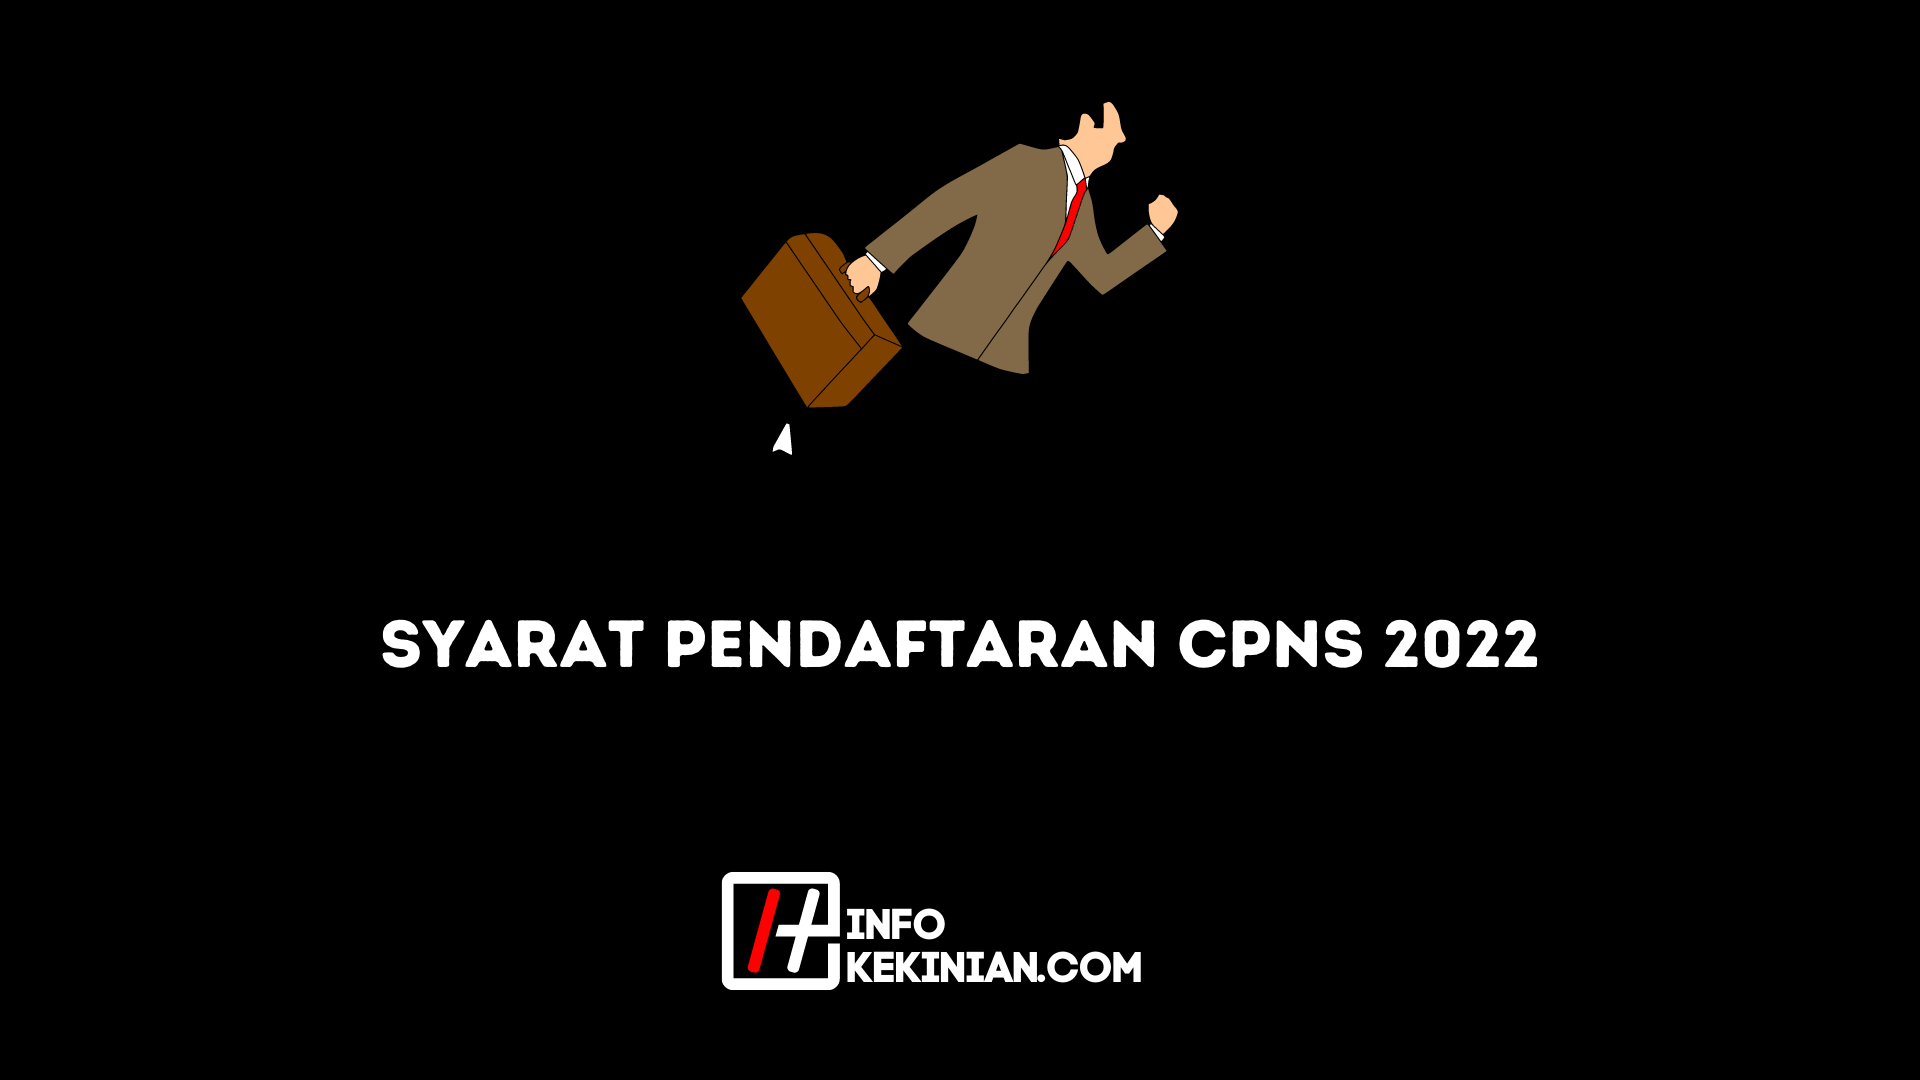 Requisitos de registro de CPNS para 2022